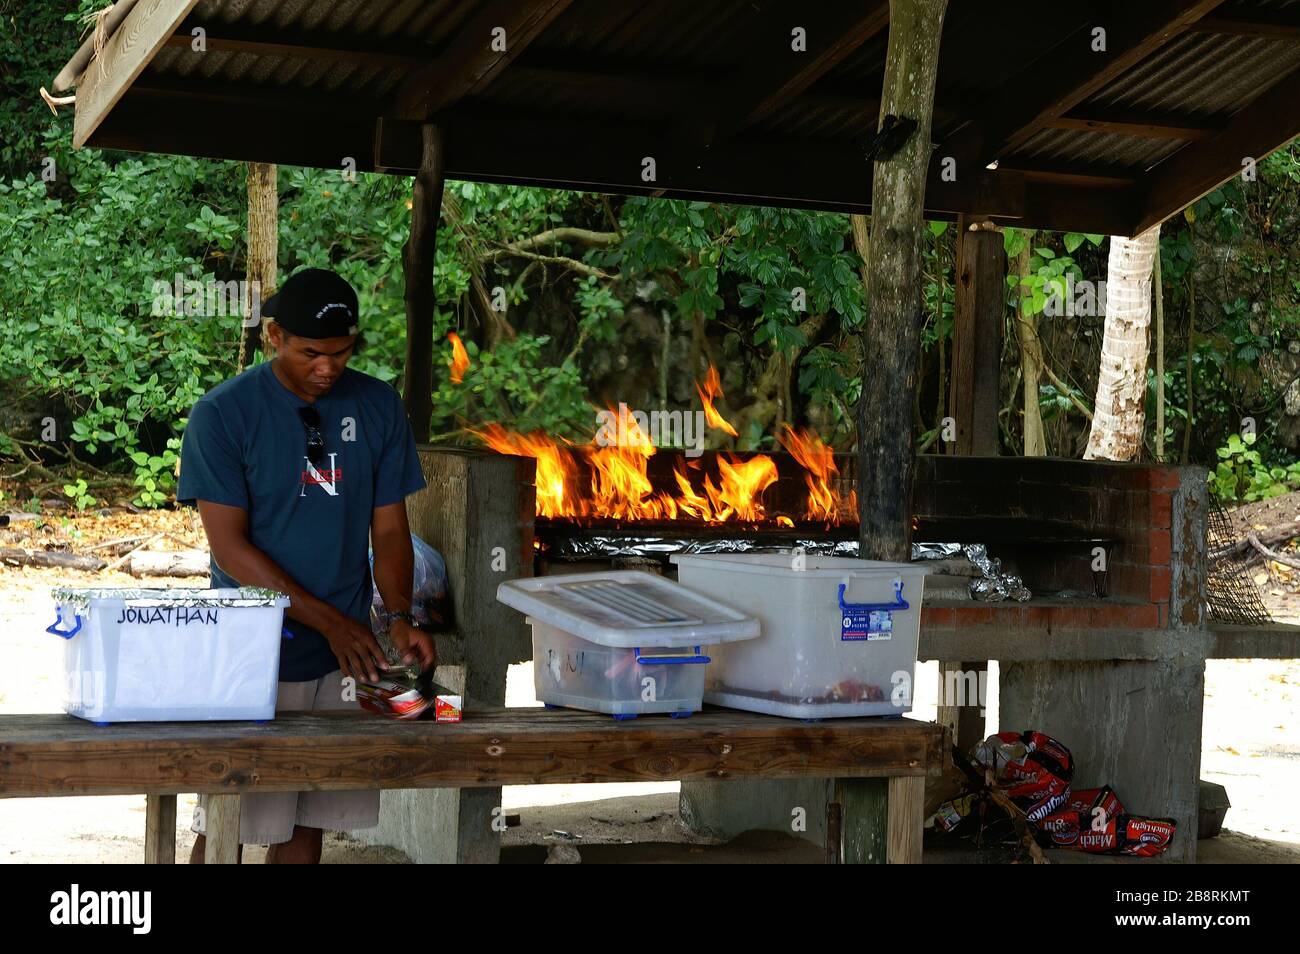 Palau, 27 DE FEBRERO de 2005 - personas que preparan comida en una parrilla al aire libre Foto de stock